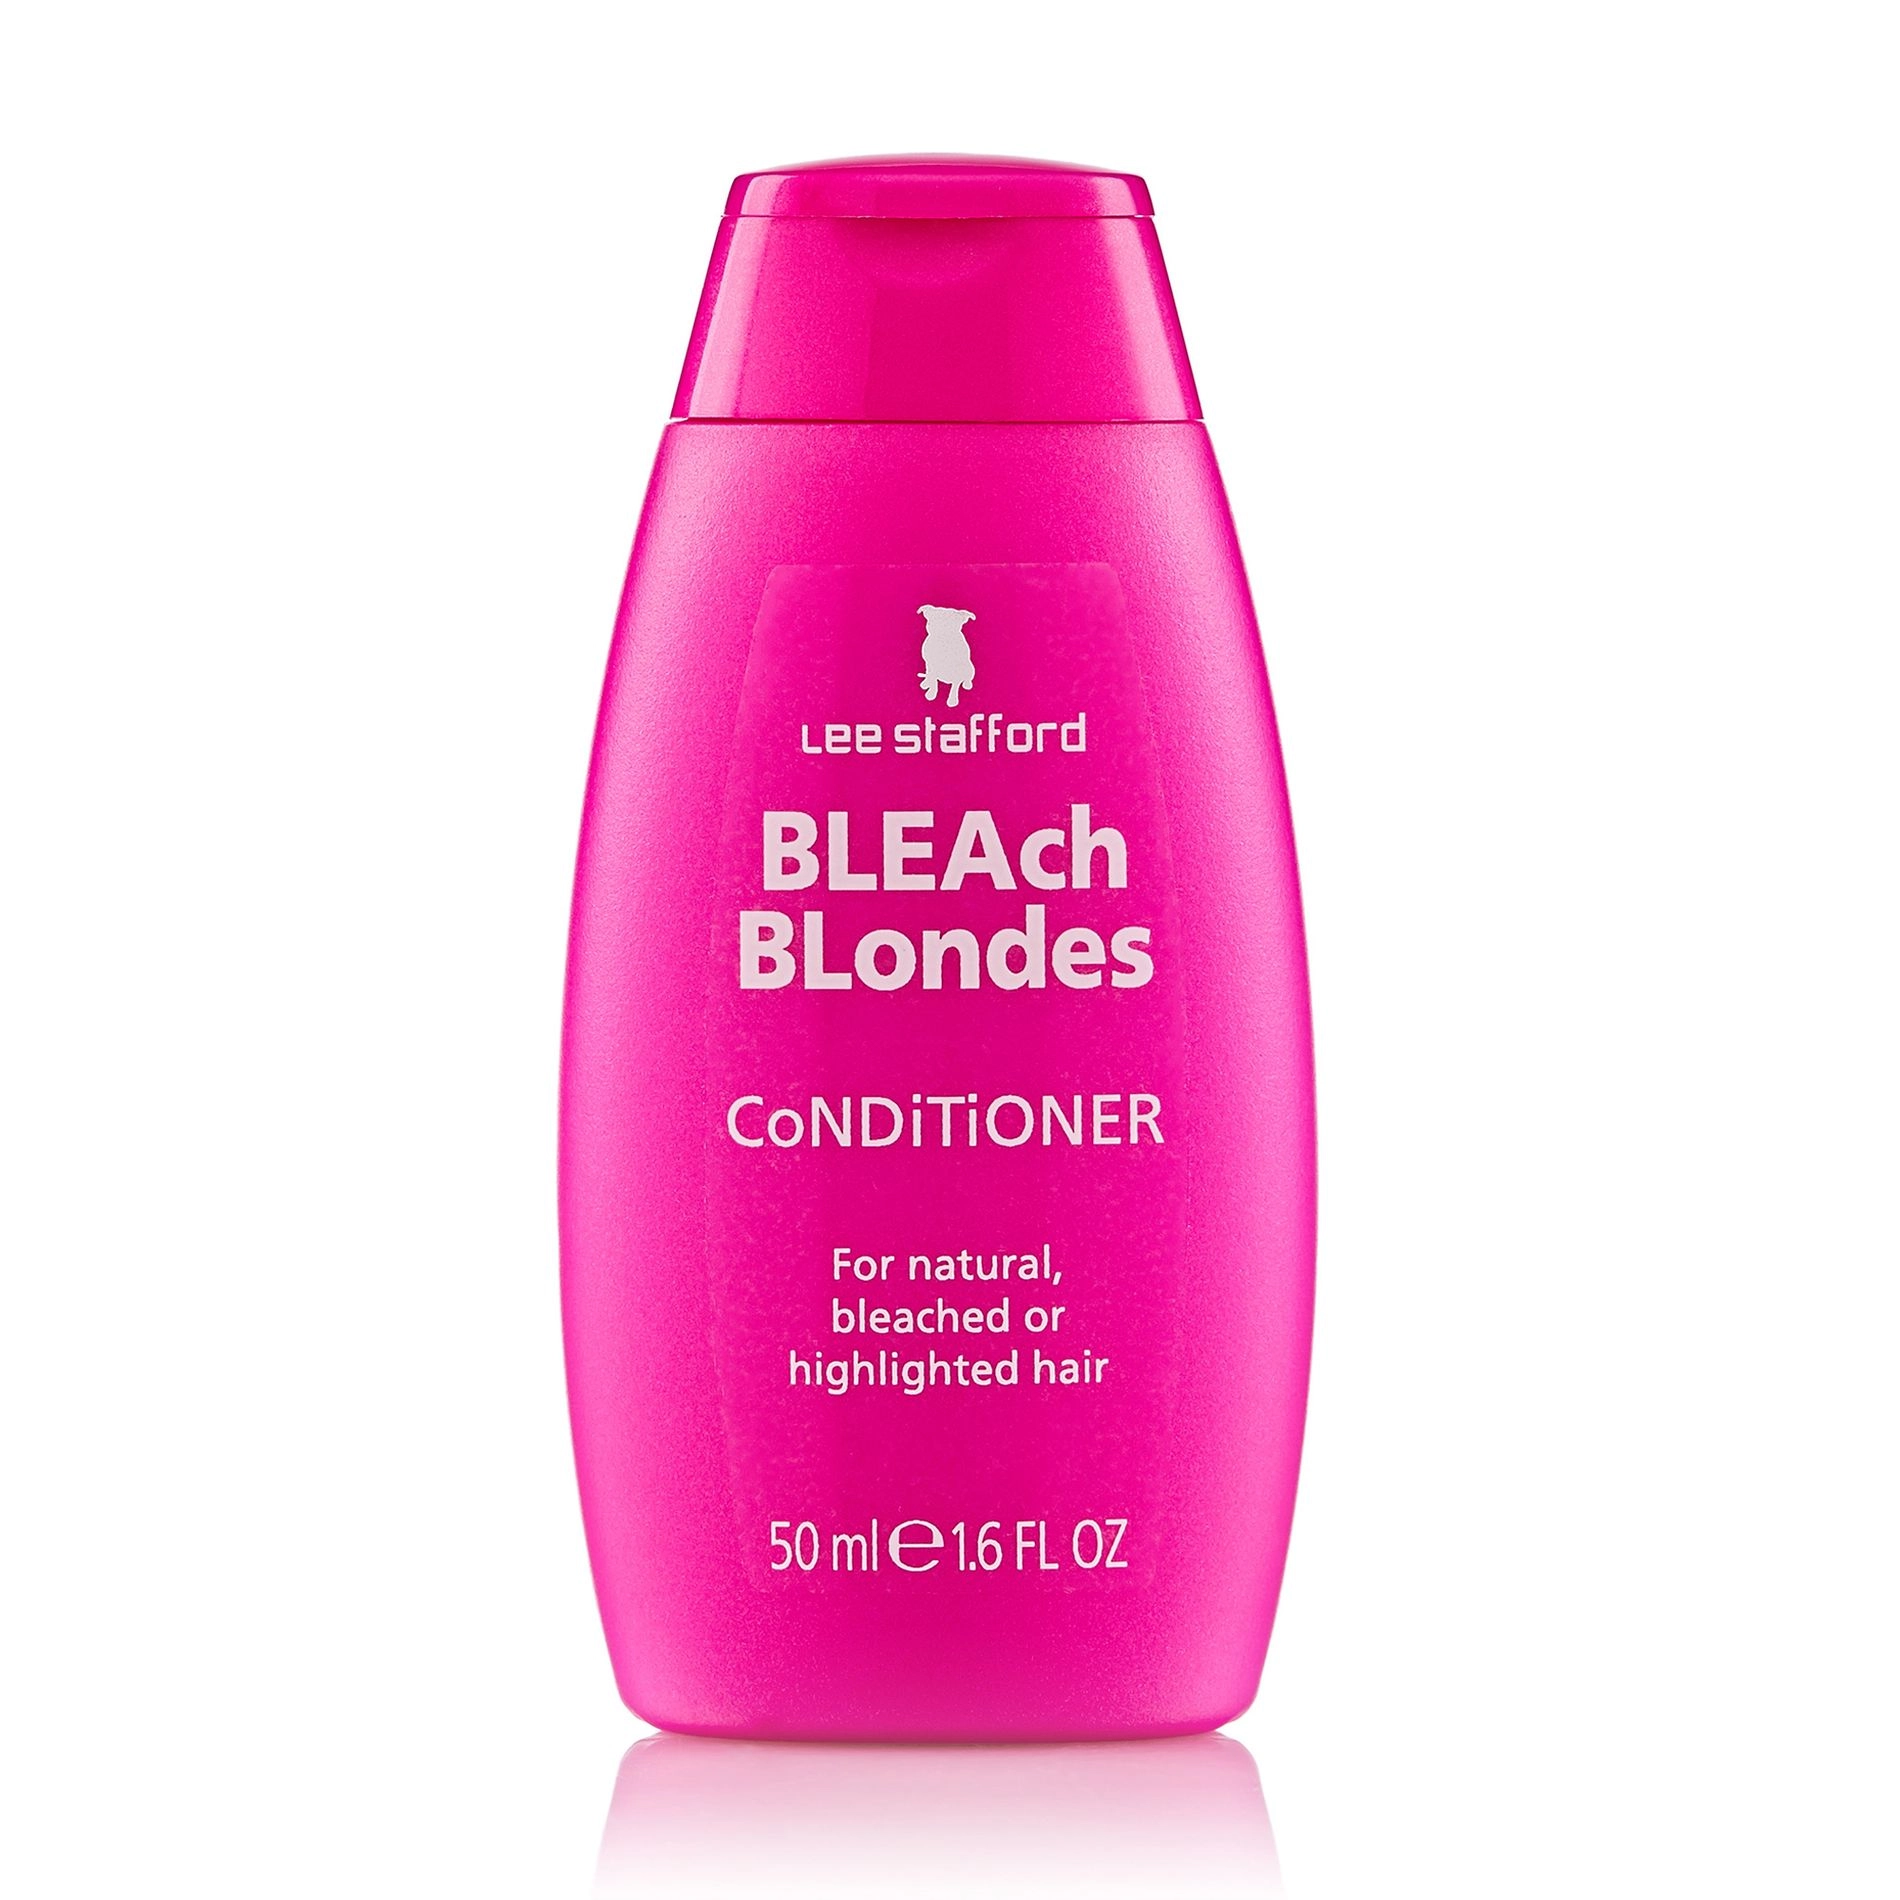 Увлажняющий кондиционер для натуральных светлых и осветленных волос - Lee Stafford Bleach Blondes Conditioner, 50 мл - фото N1